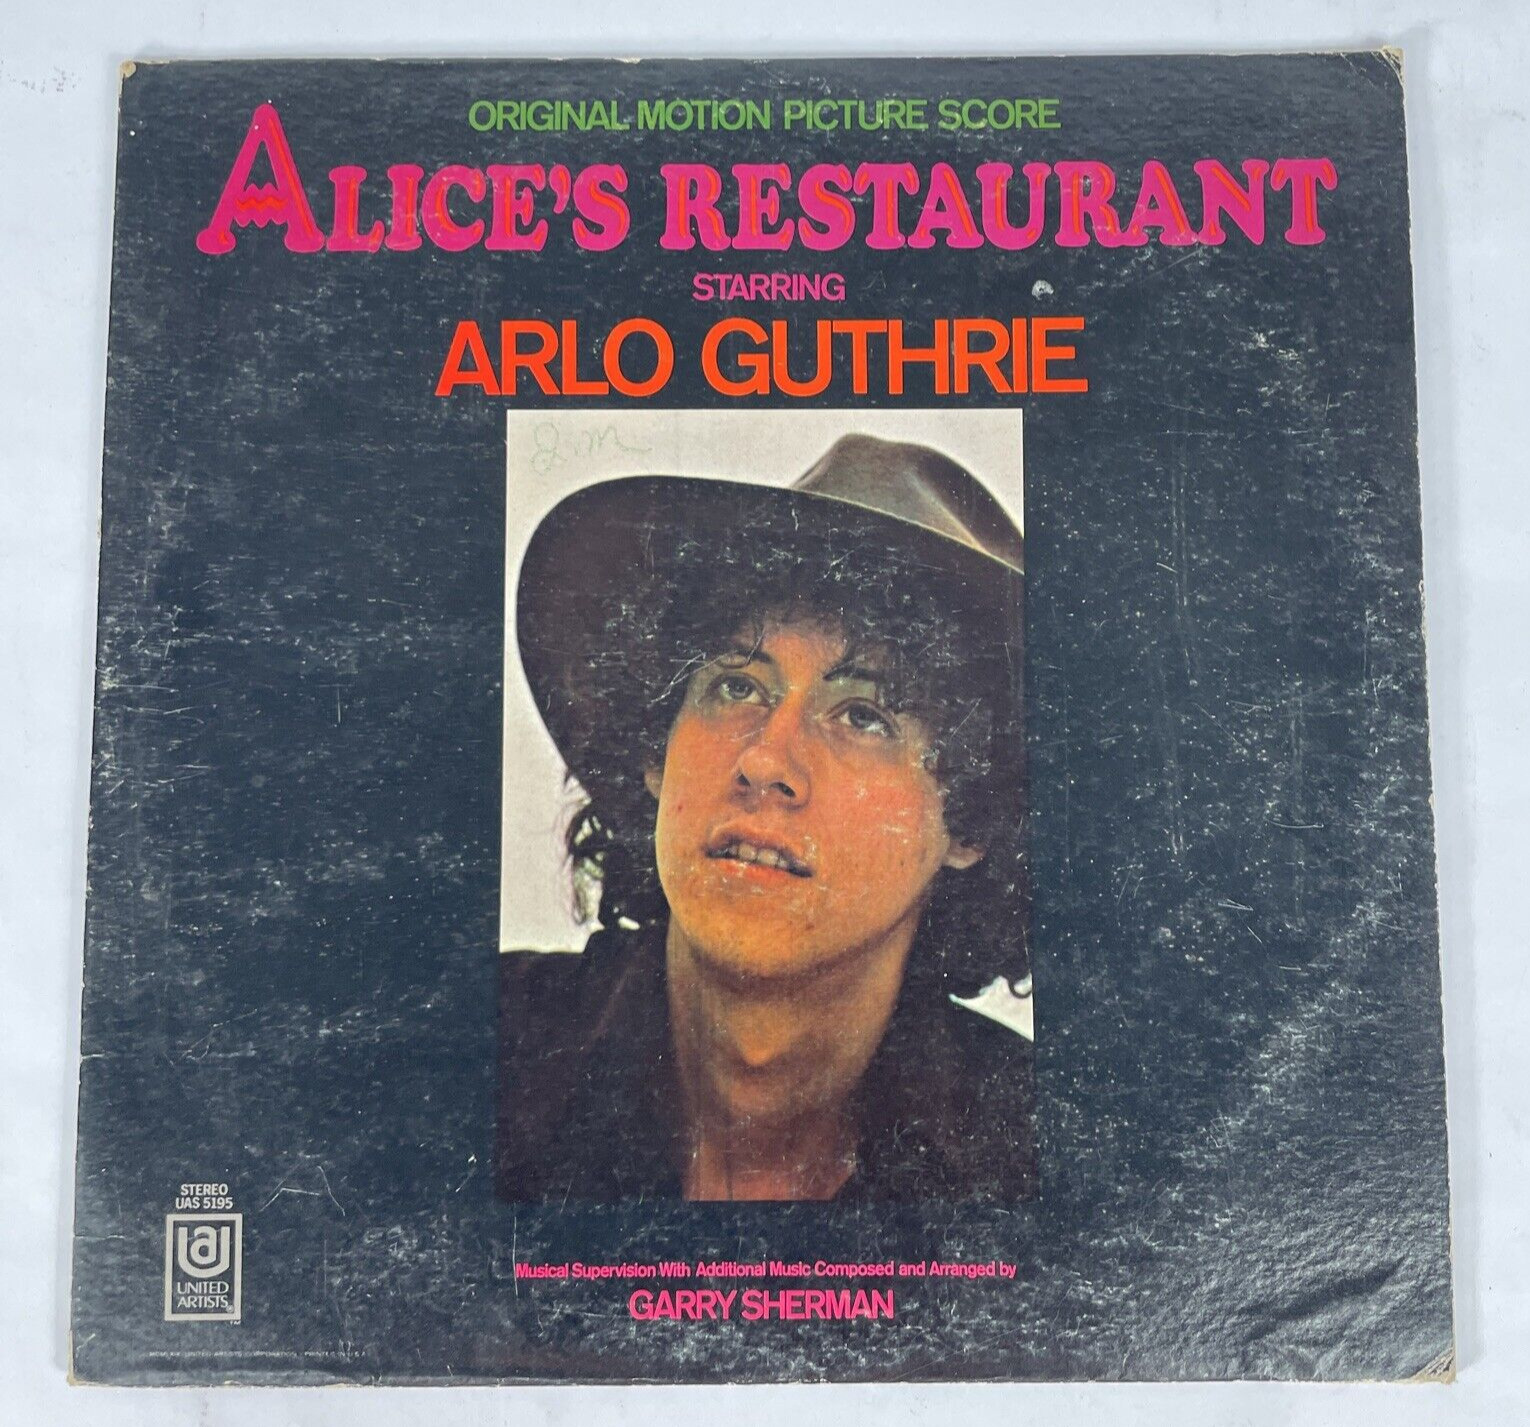 VTG: 1969 Alice's Restaurant Soundtrack Starring Arlo Guthrie Vinyl Record LP